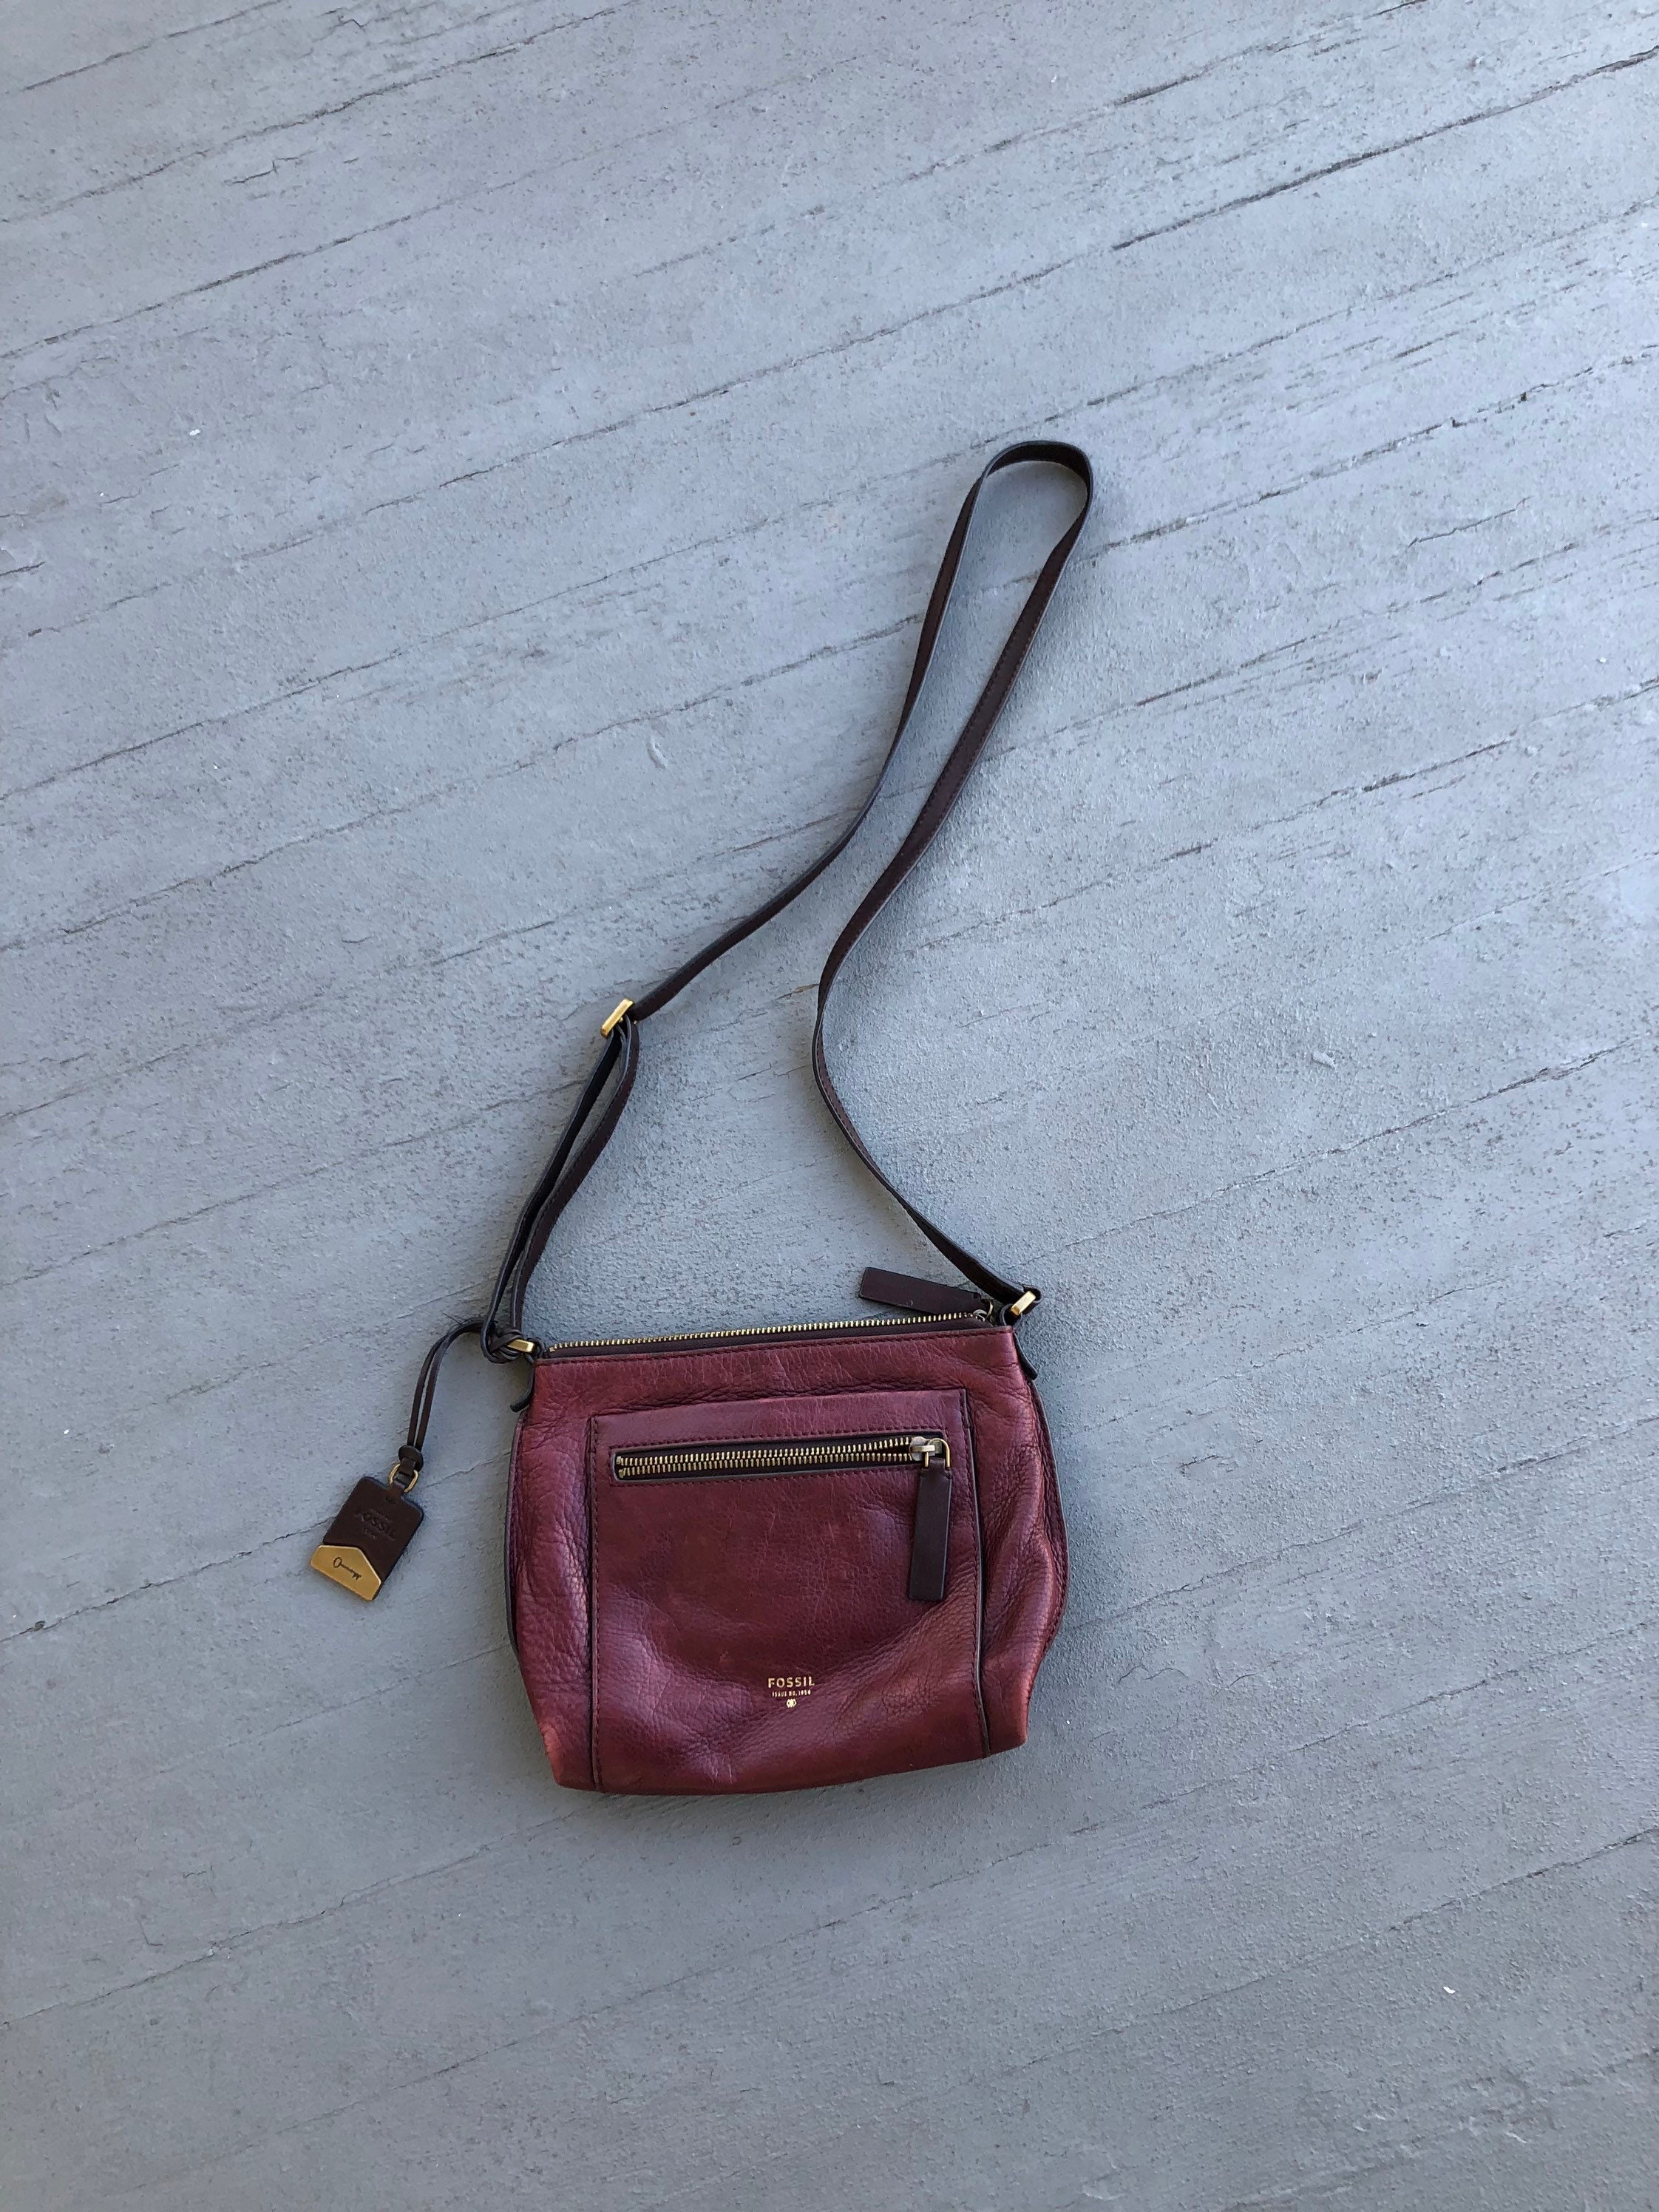 Huipil Luna Fringe Bag purse cross body suede tan